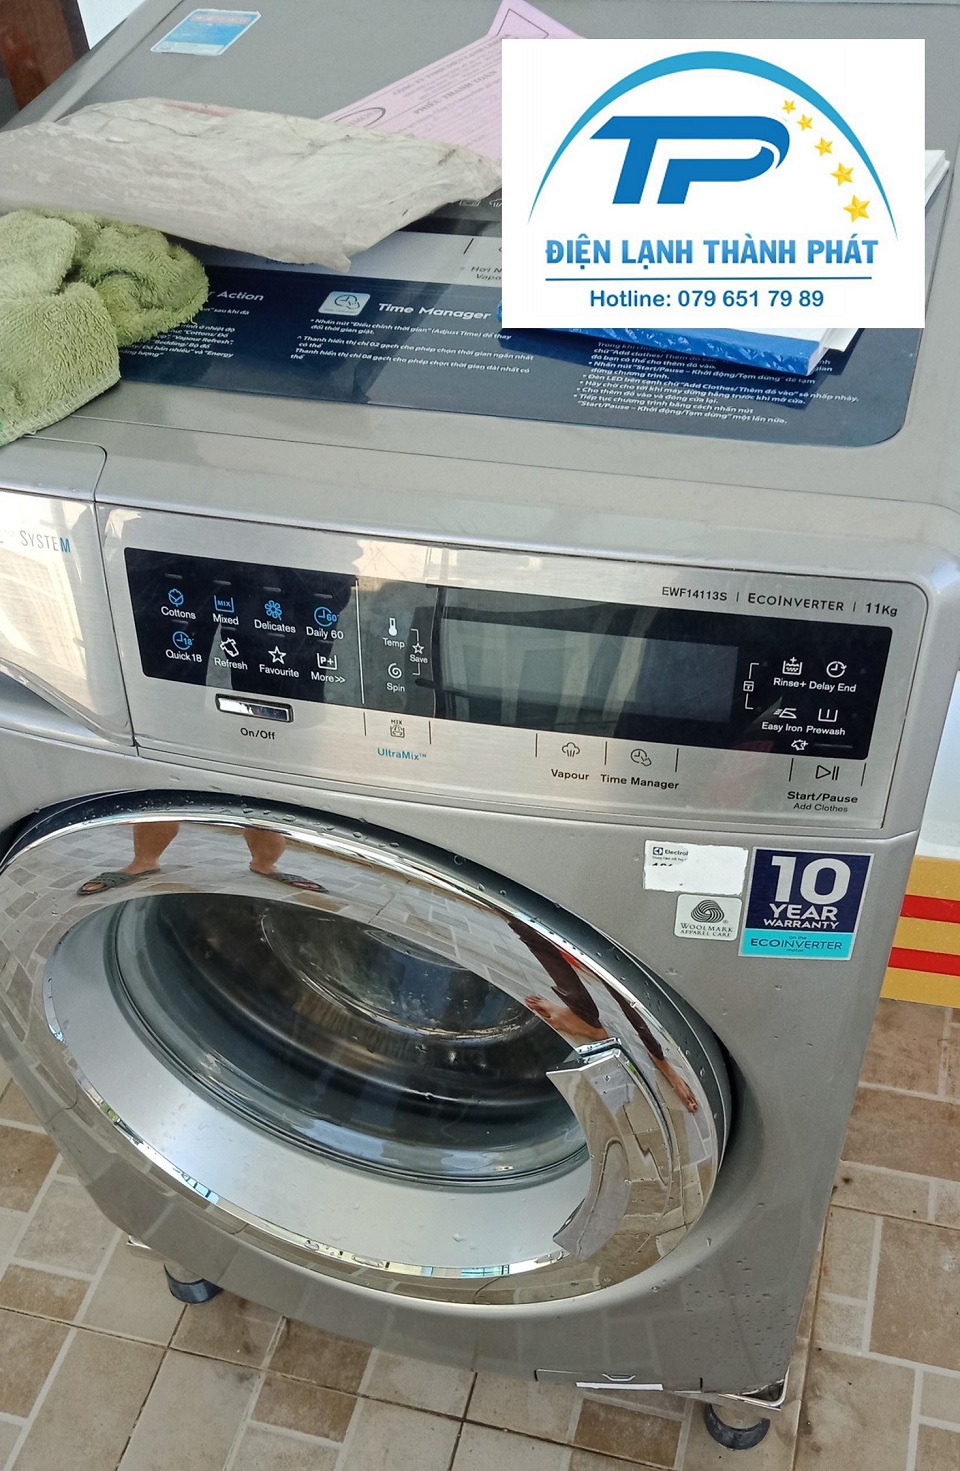 Máy giặt thường gặp trục trặc ảnh hưởng tới sinh hoạt của cả gia đình.